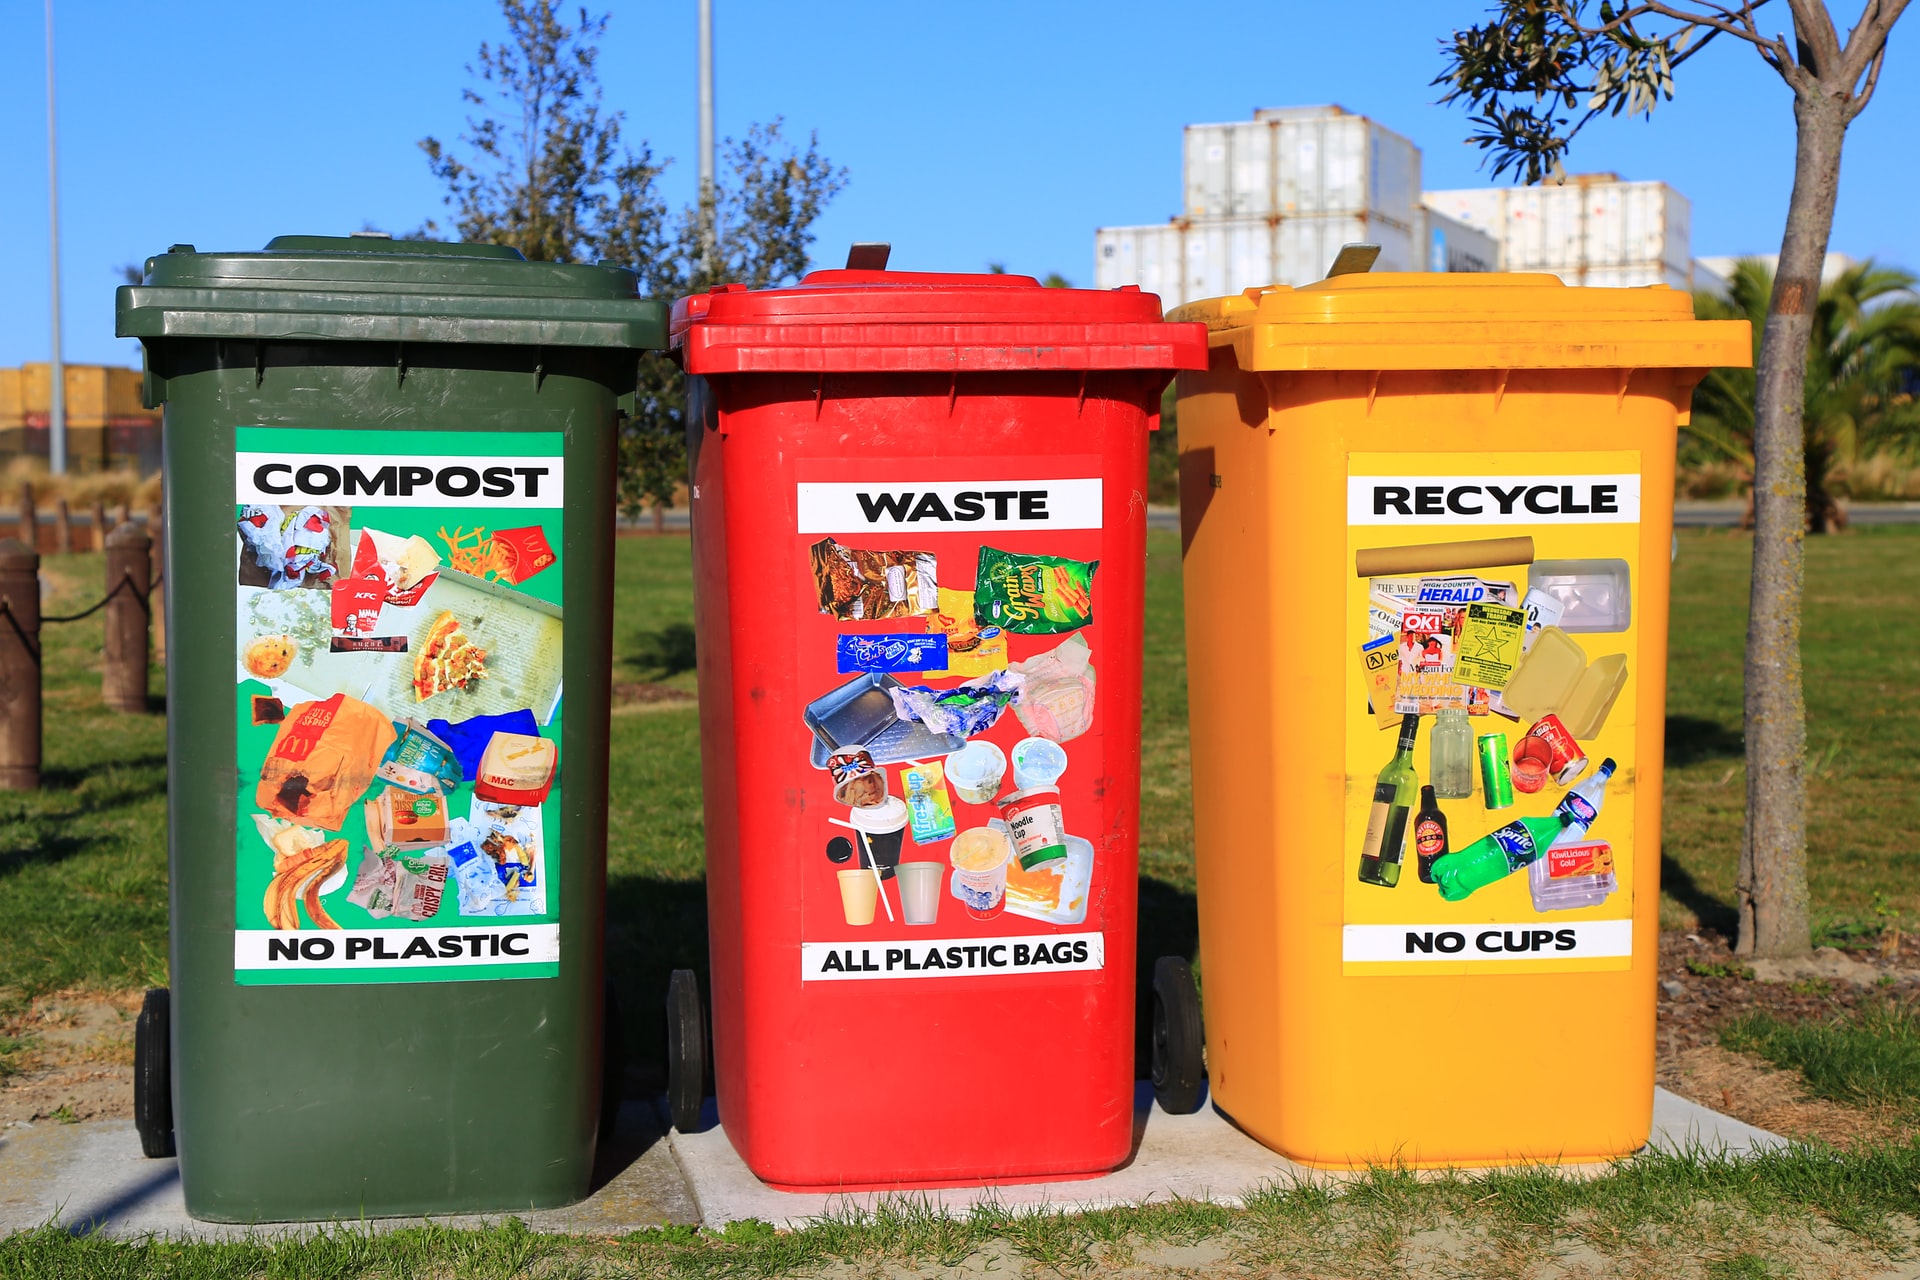 Además de clasificar la basura existen actividades, como el reusar envases de plástico, que ayudan al medio ambiente. (Foto Prensa Libre: Nareeta Martin on Unsplash).